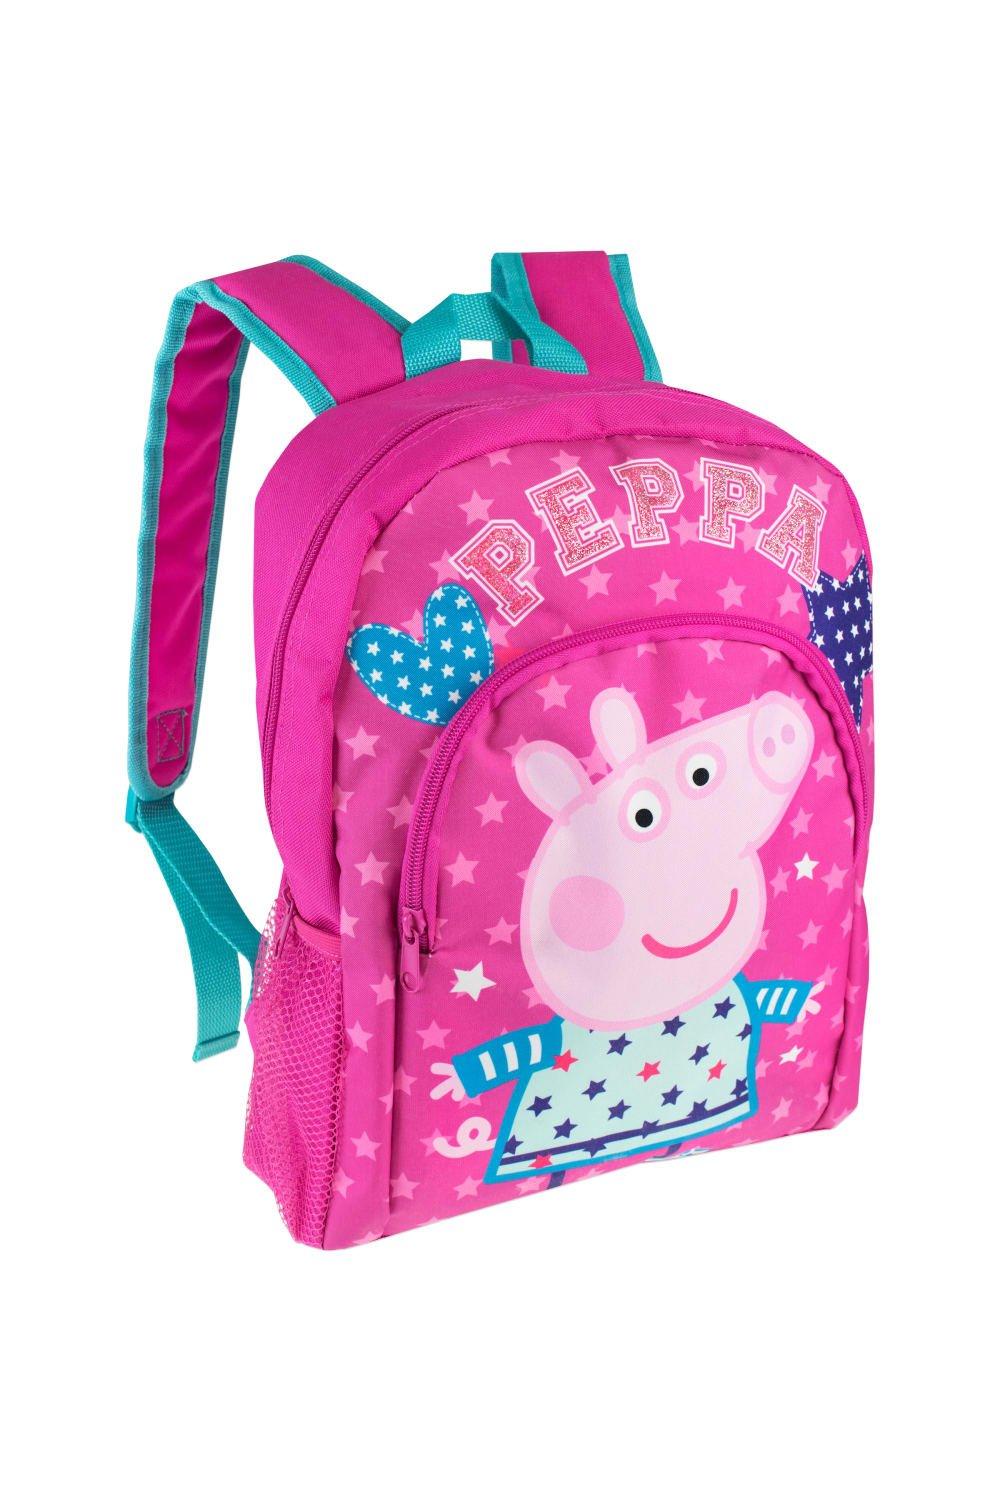 Детский рюкзак Peppa Pig, розовый детский рюкзак peppa pig розовый